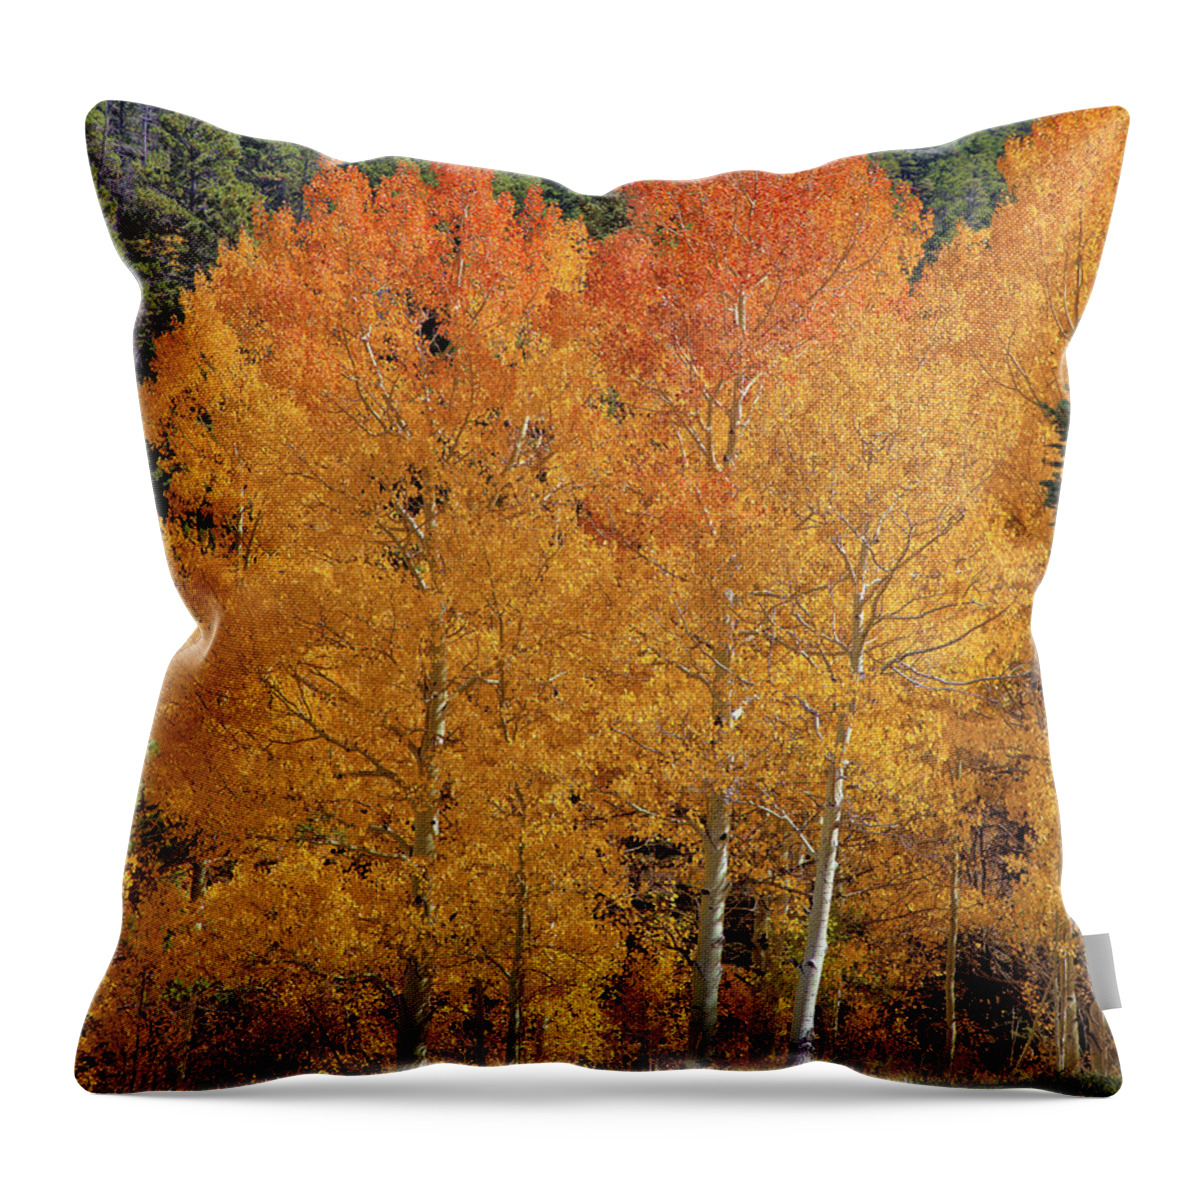 Colorado Throw Pillow featuring the photograph Colorado Fall Colors by Bob Falcone